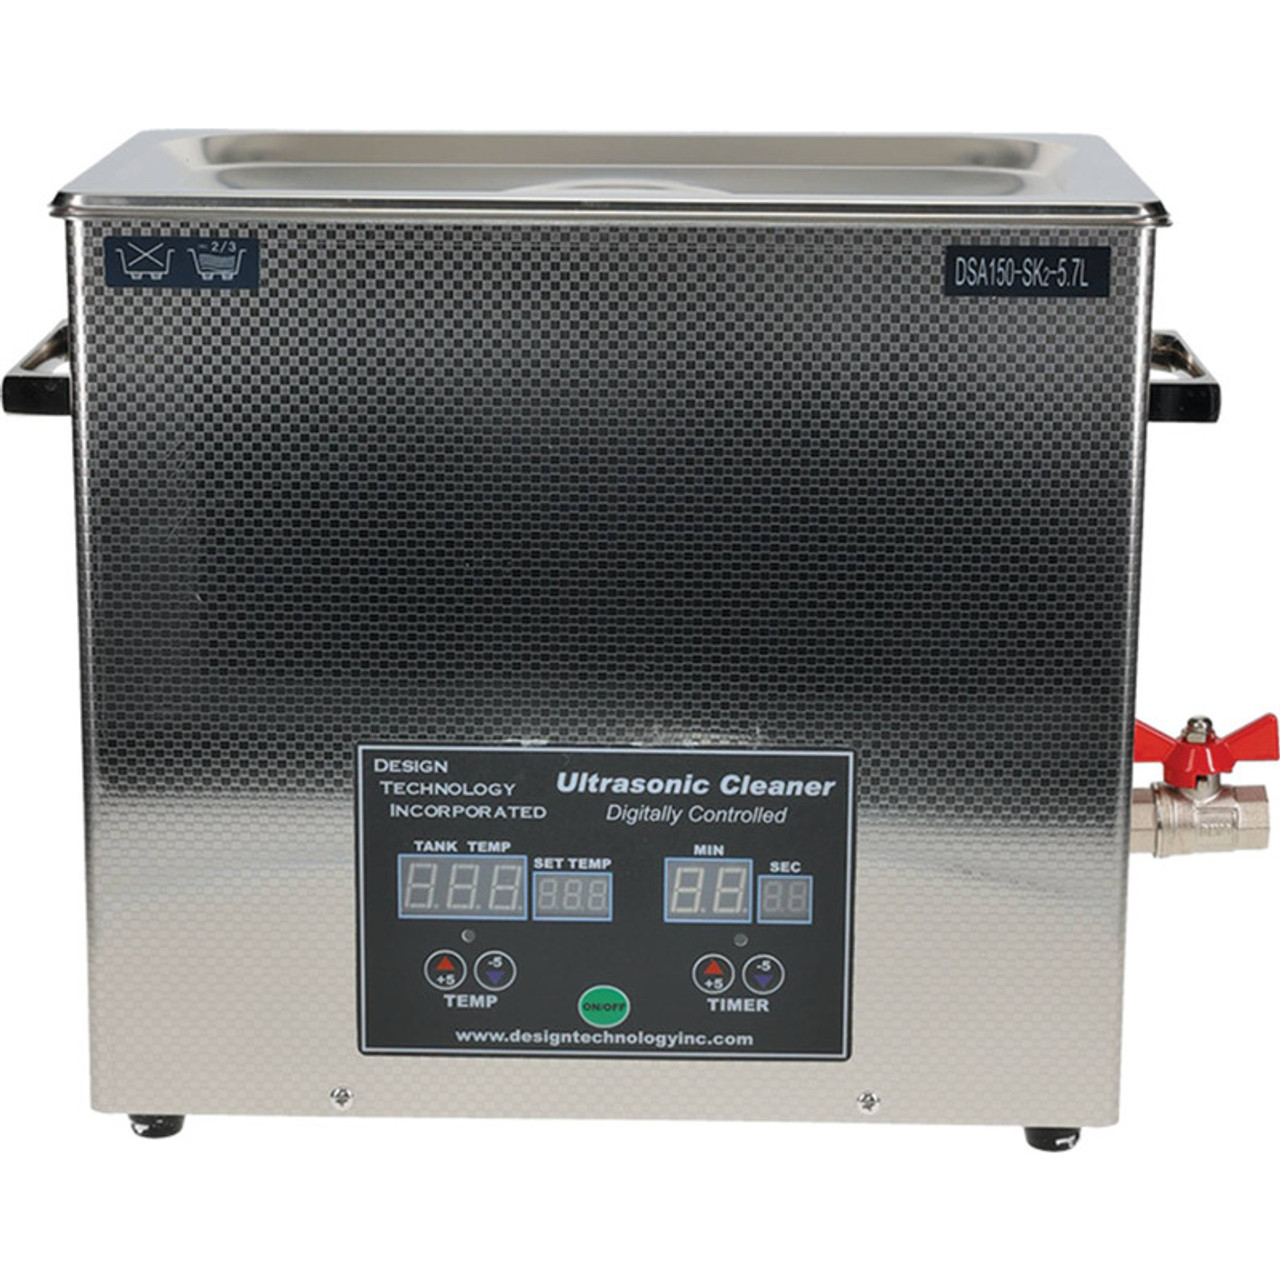 Stens 752-110 Ultrasonic 1.5 Gallon Cleaner